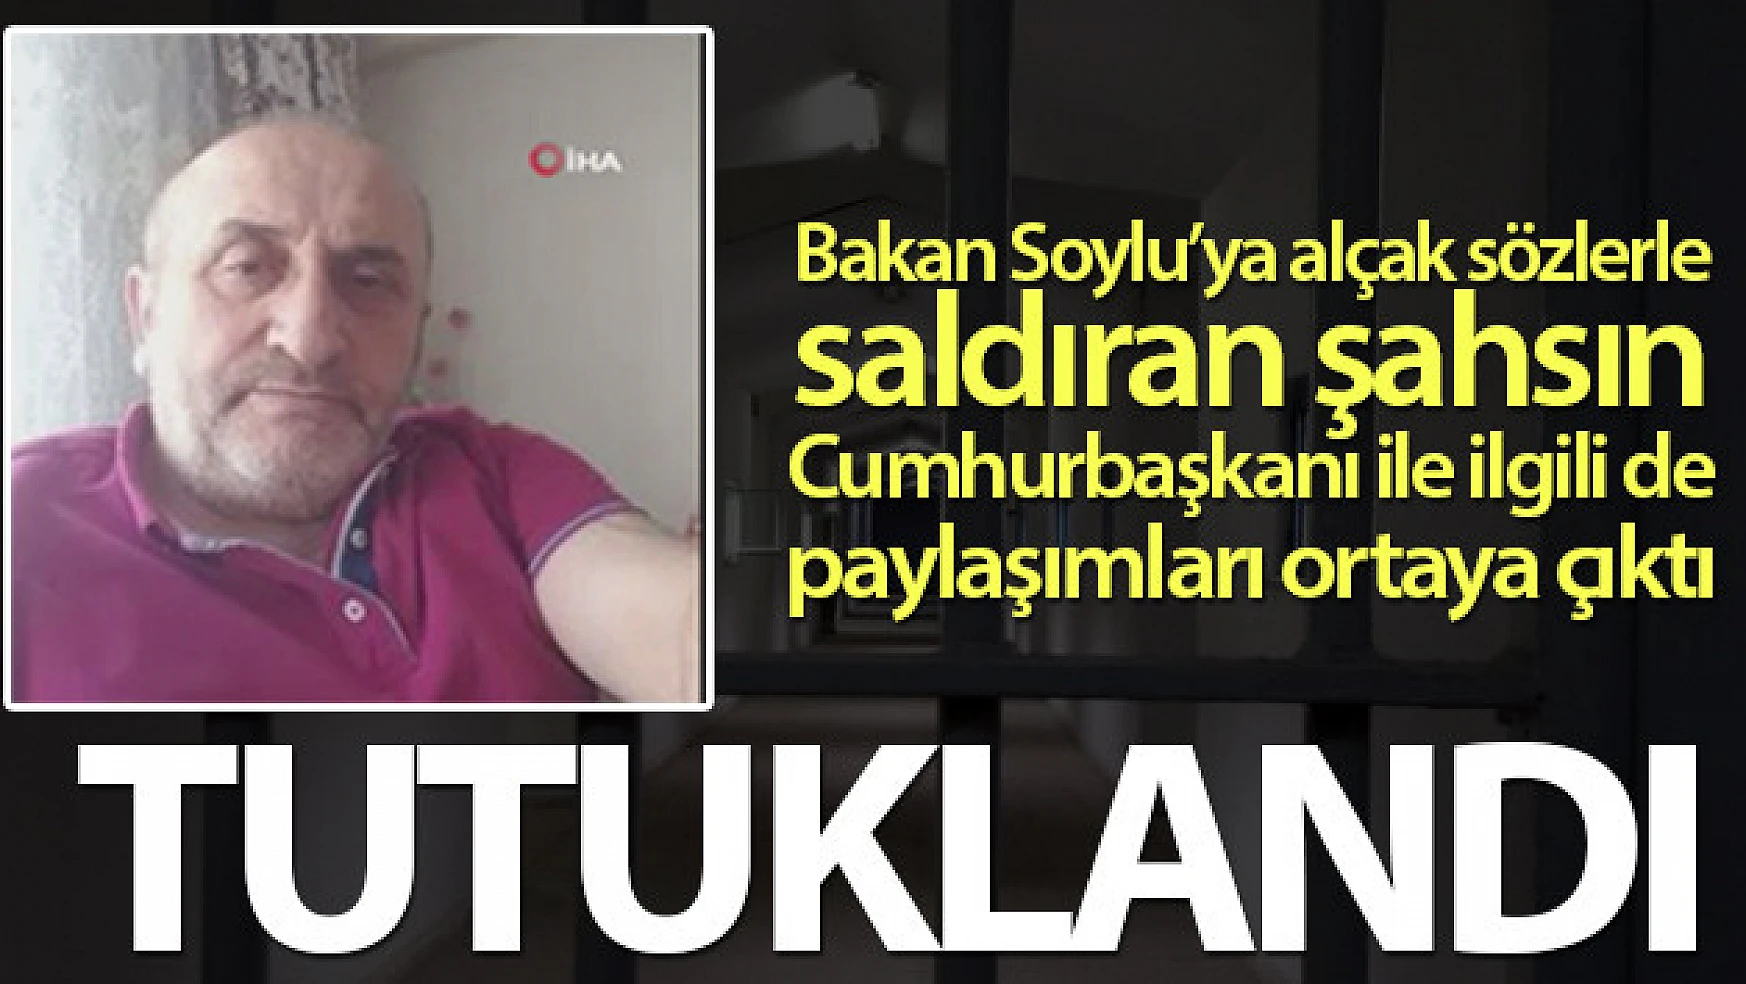 Bakan Soylu'ya hakaret eden şahıs tutuklandı